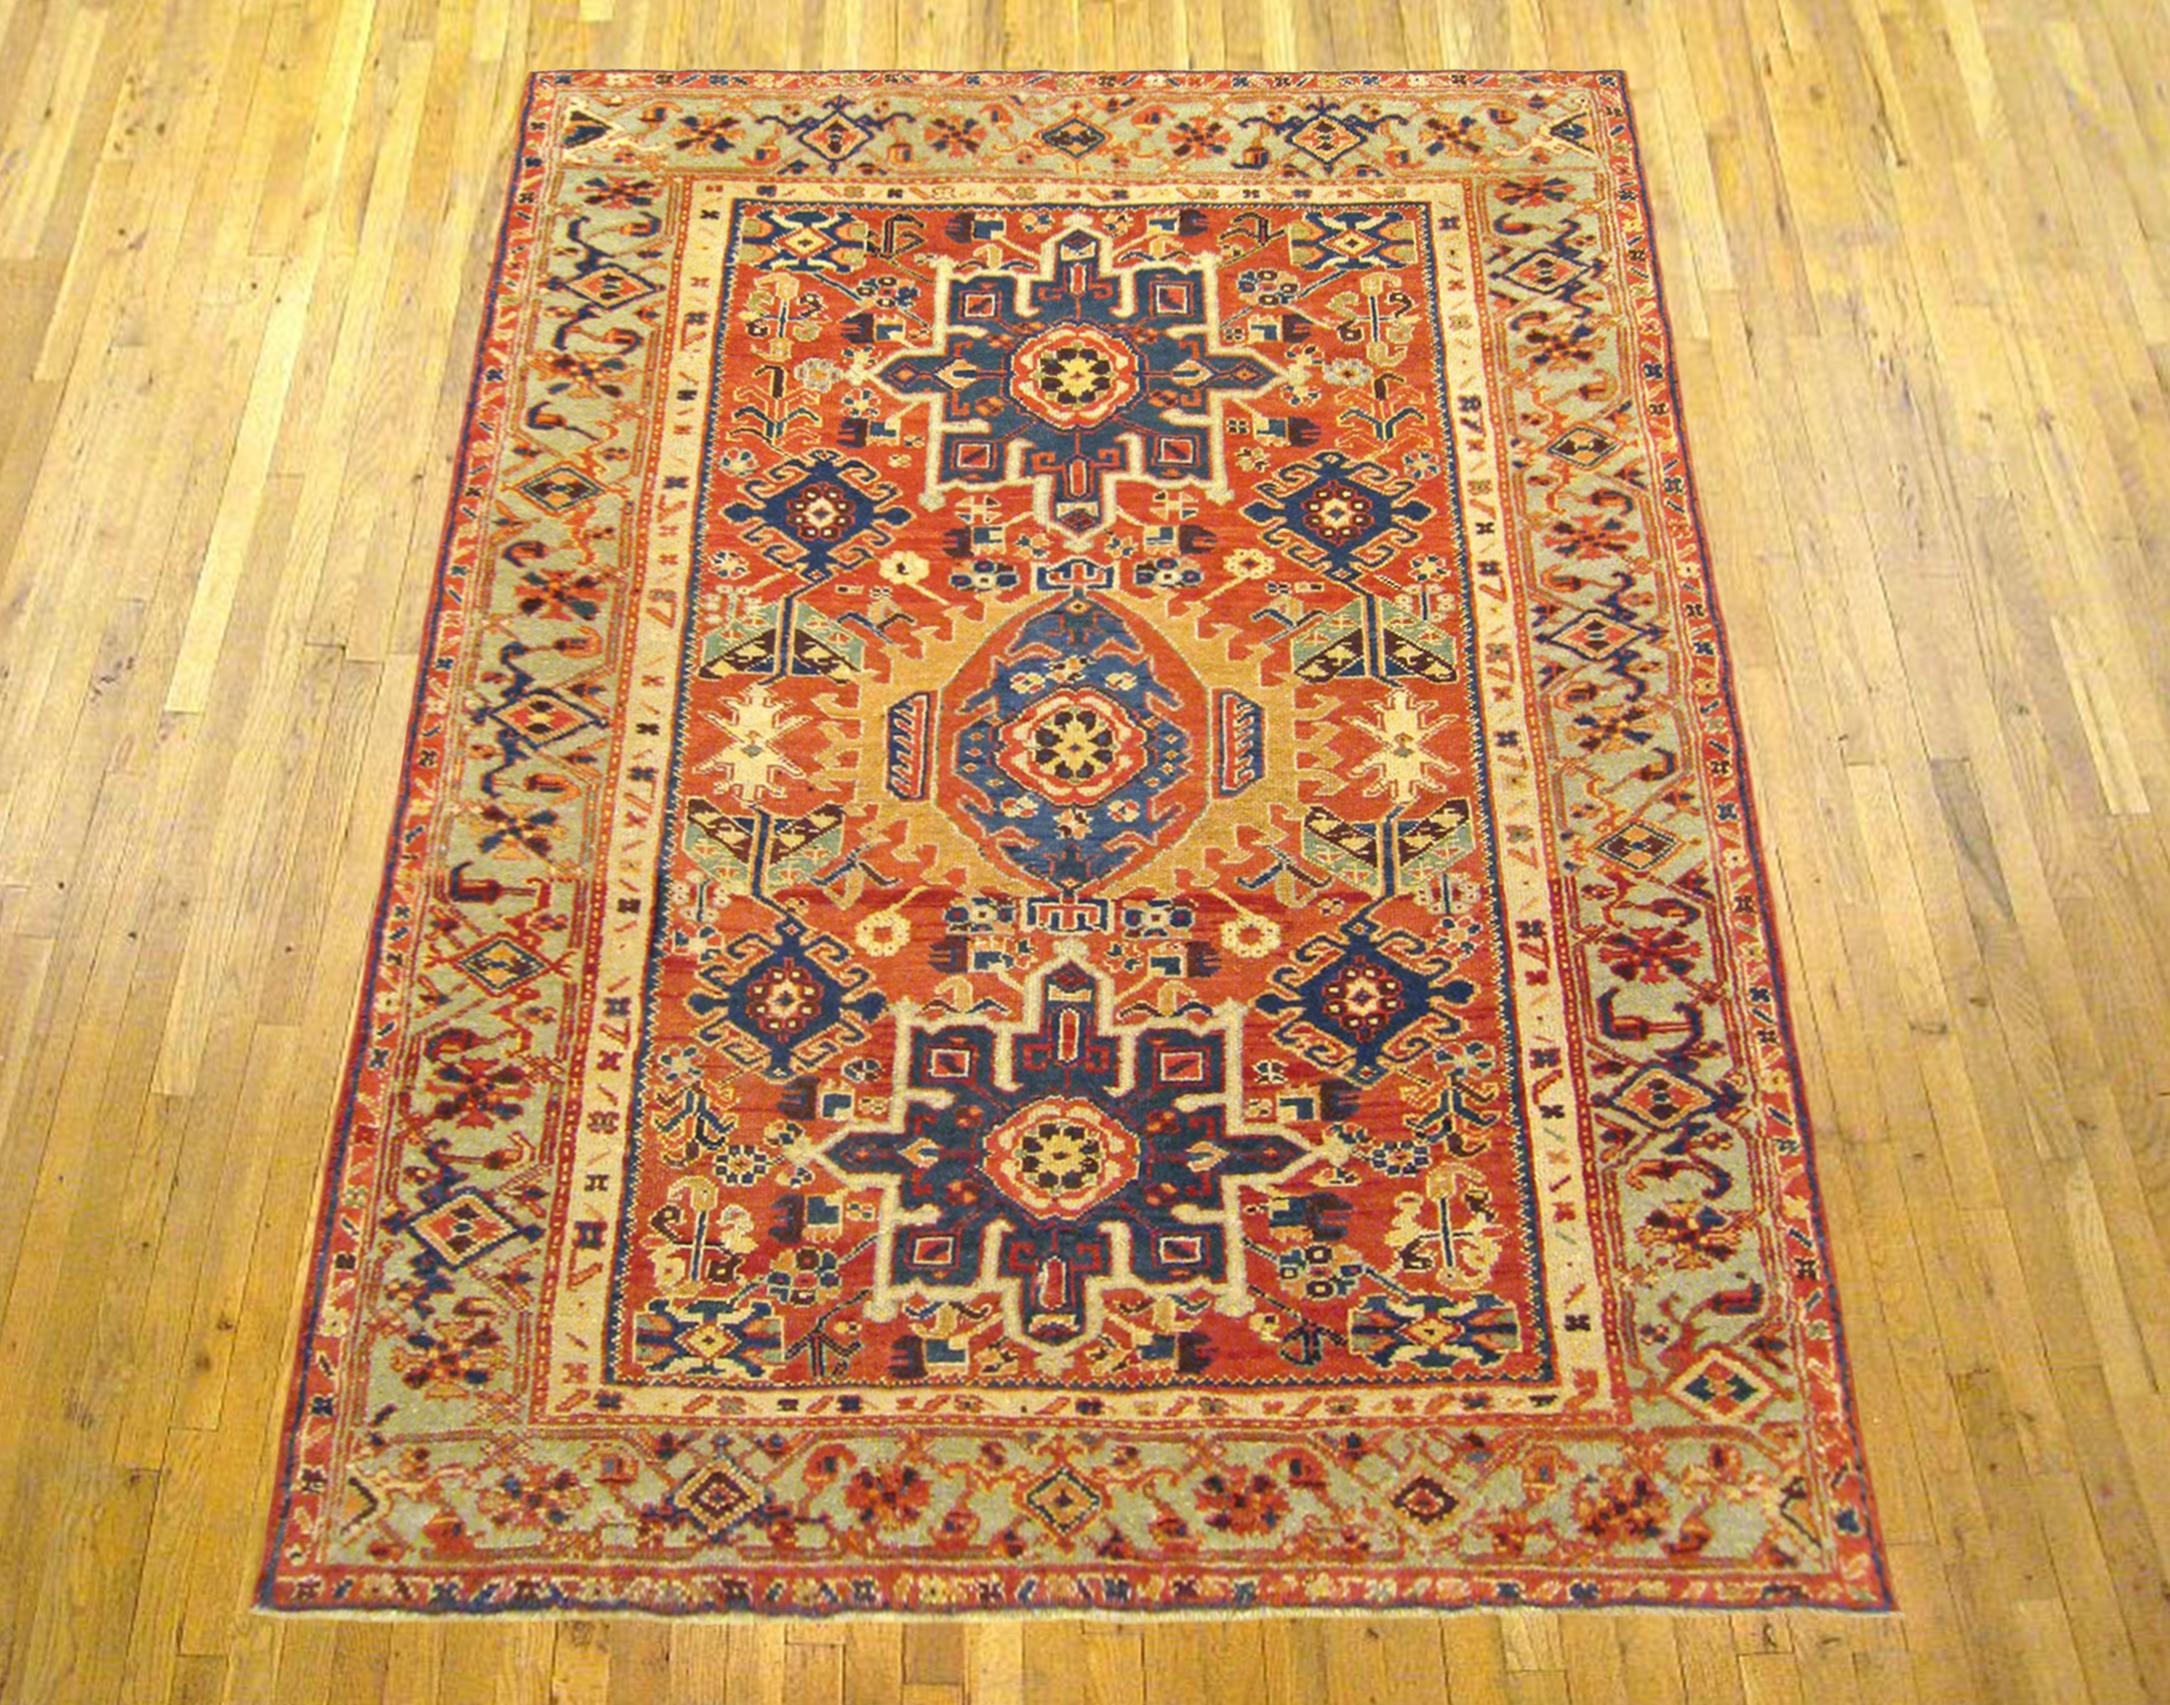 Antique Persian Heriz Karaja Oriental Rug, in small size.

An antique Persian Heriz Karaja oriental rug, size 6'3